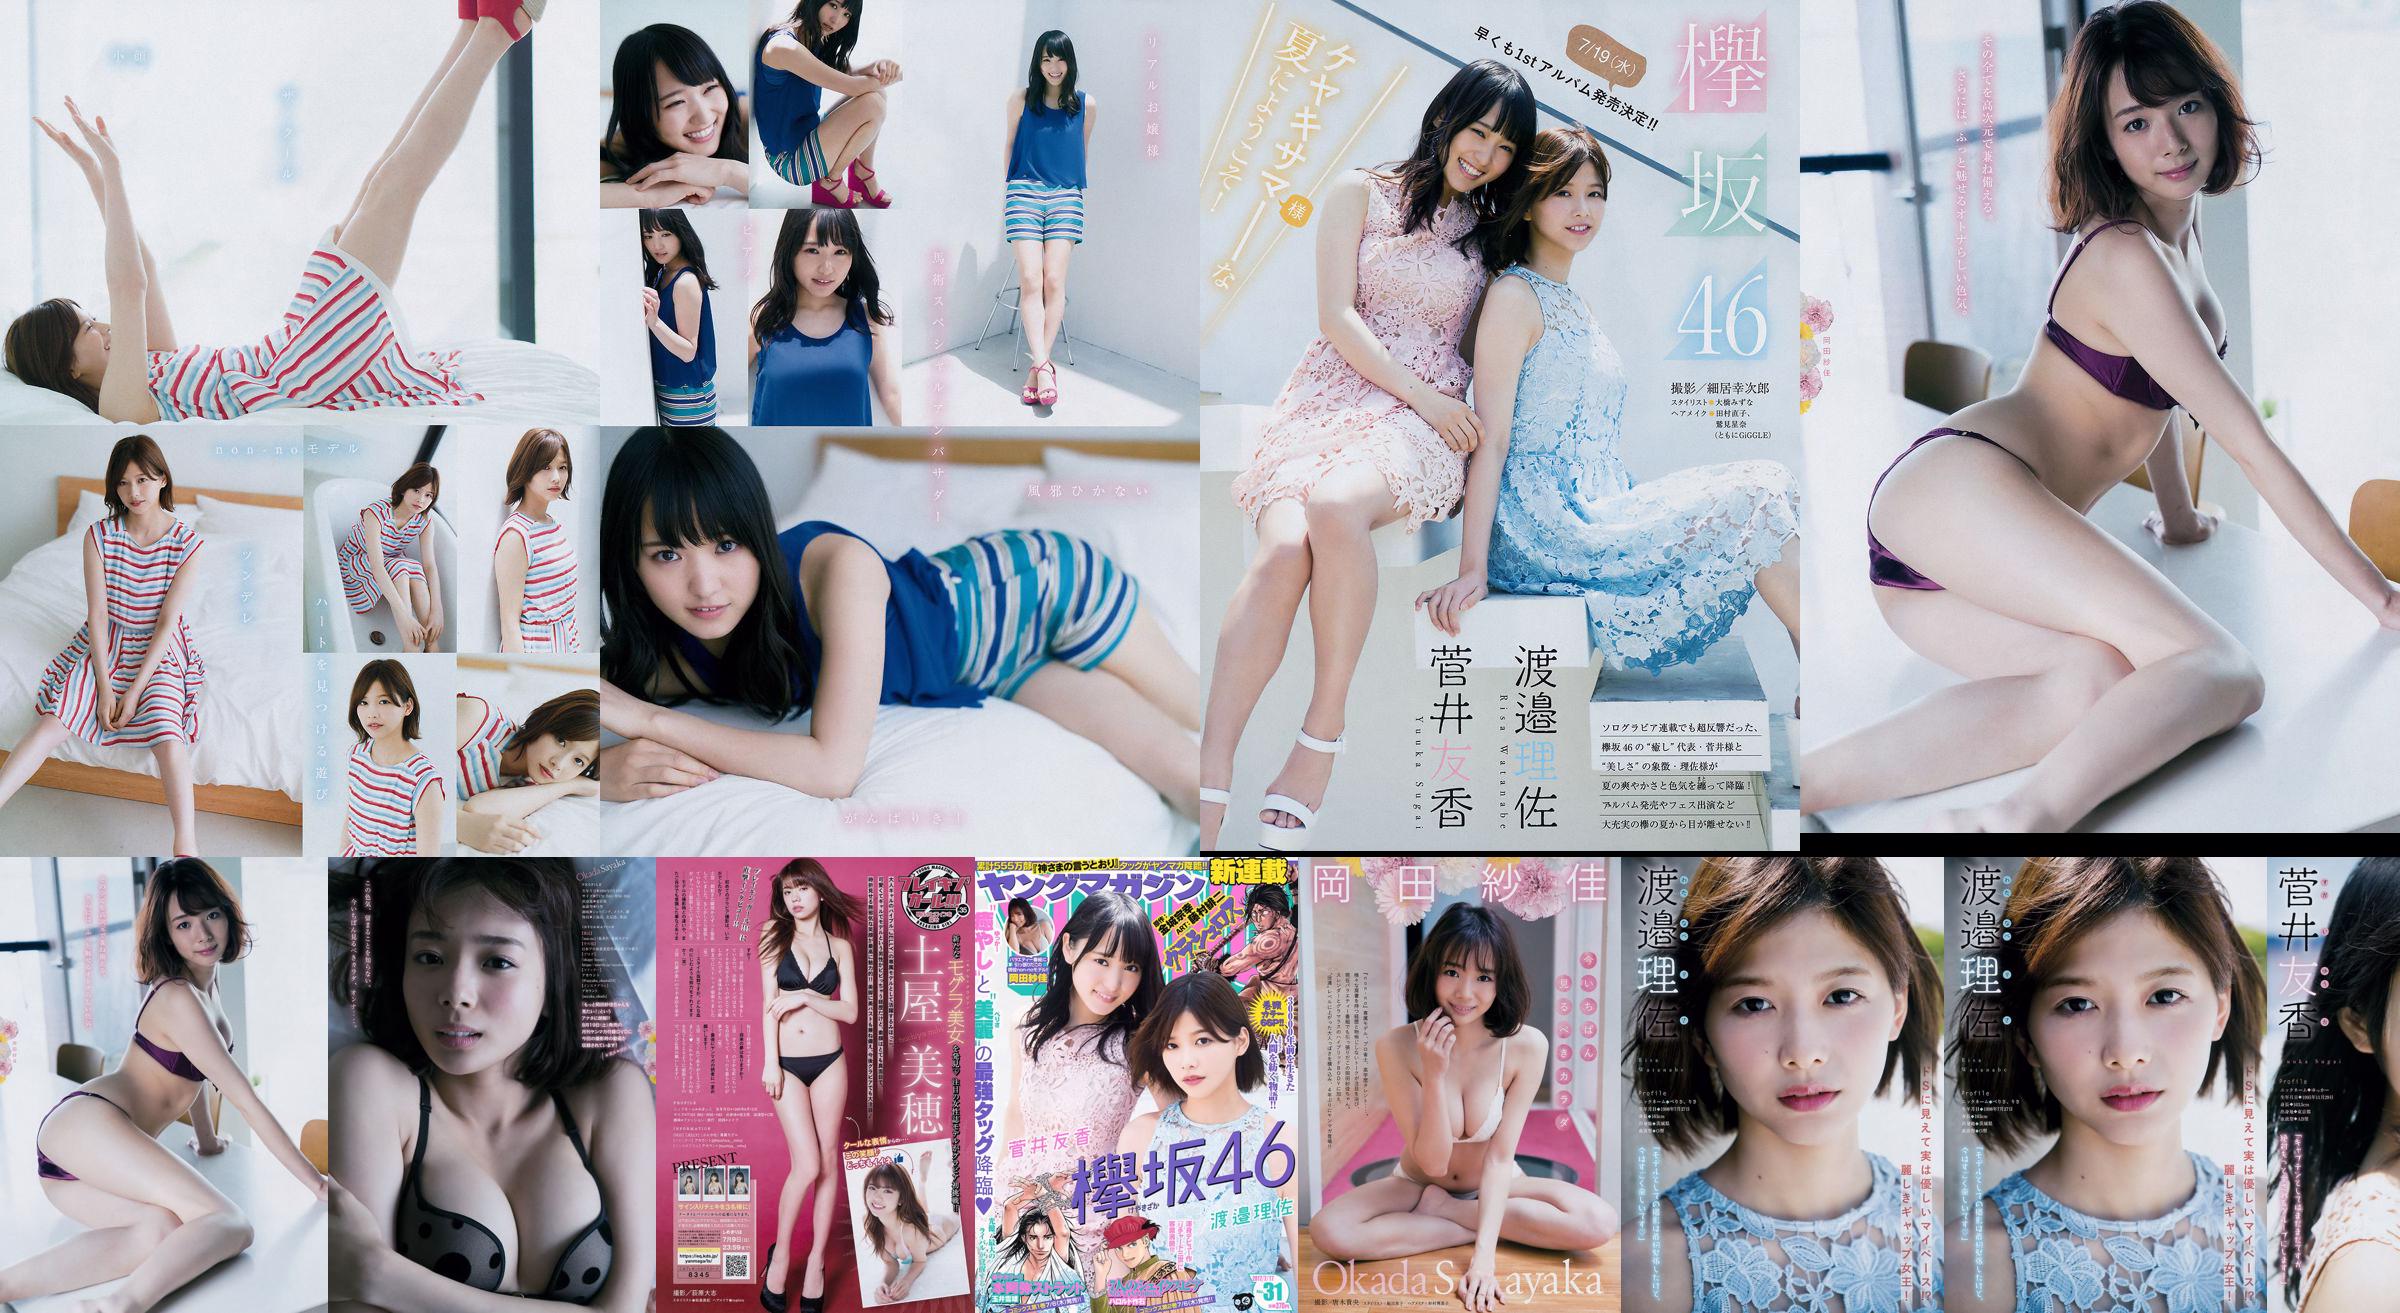 [Young Magazine] Watanabe Risa, Sugai Yuka, Okada Saika 2017 No.31 Photo Magazine No.fe5989 Page 1